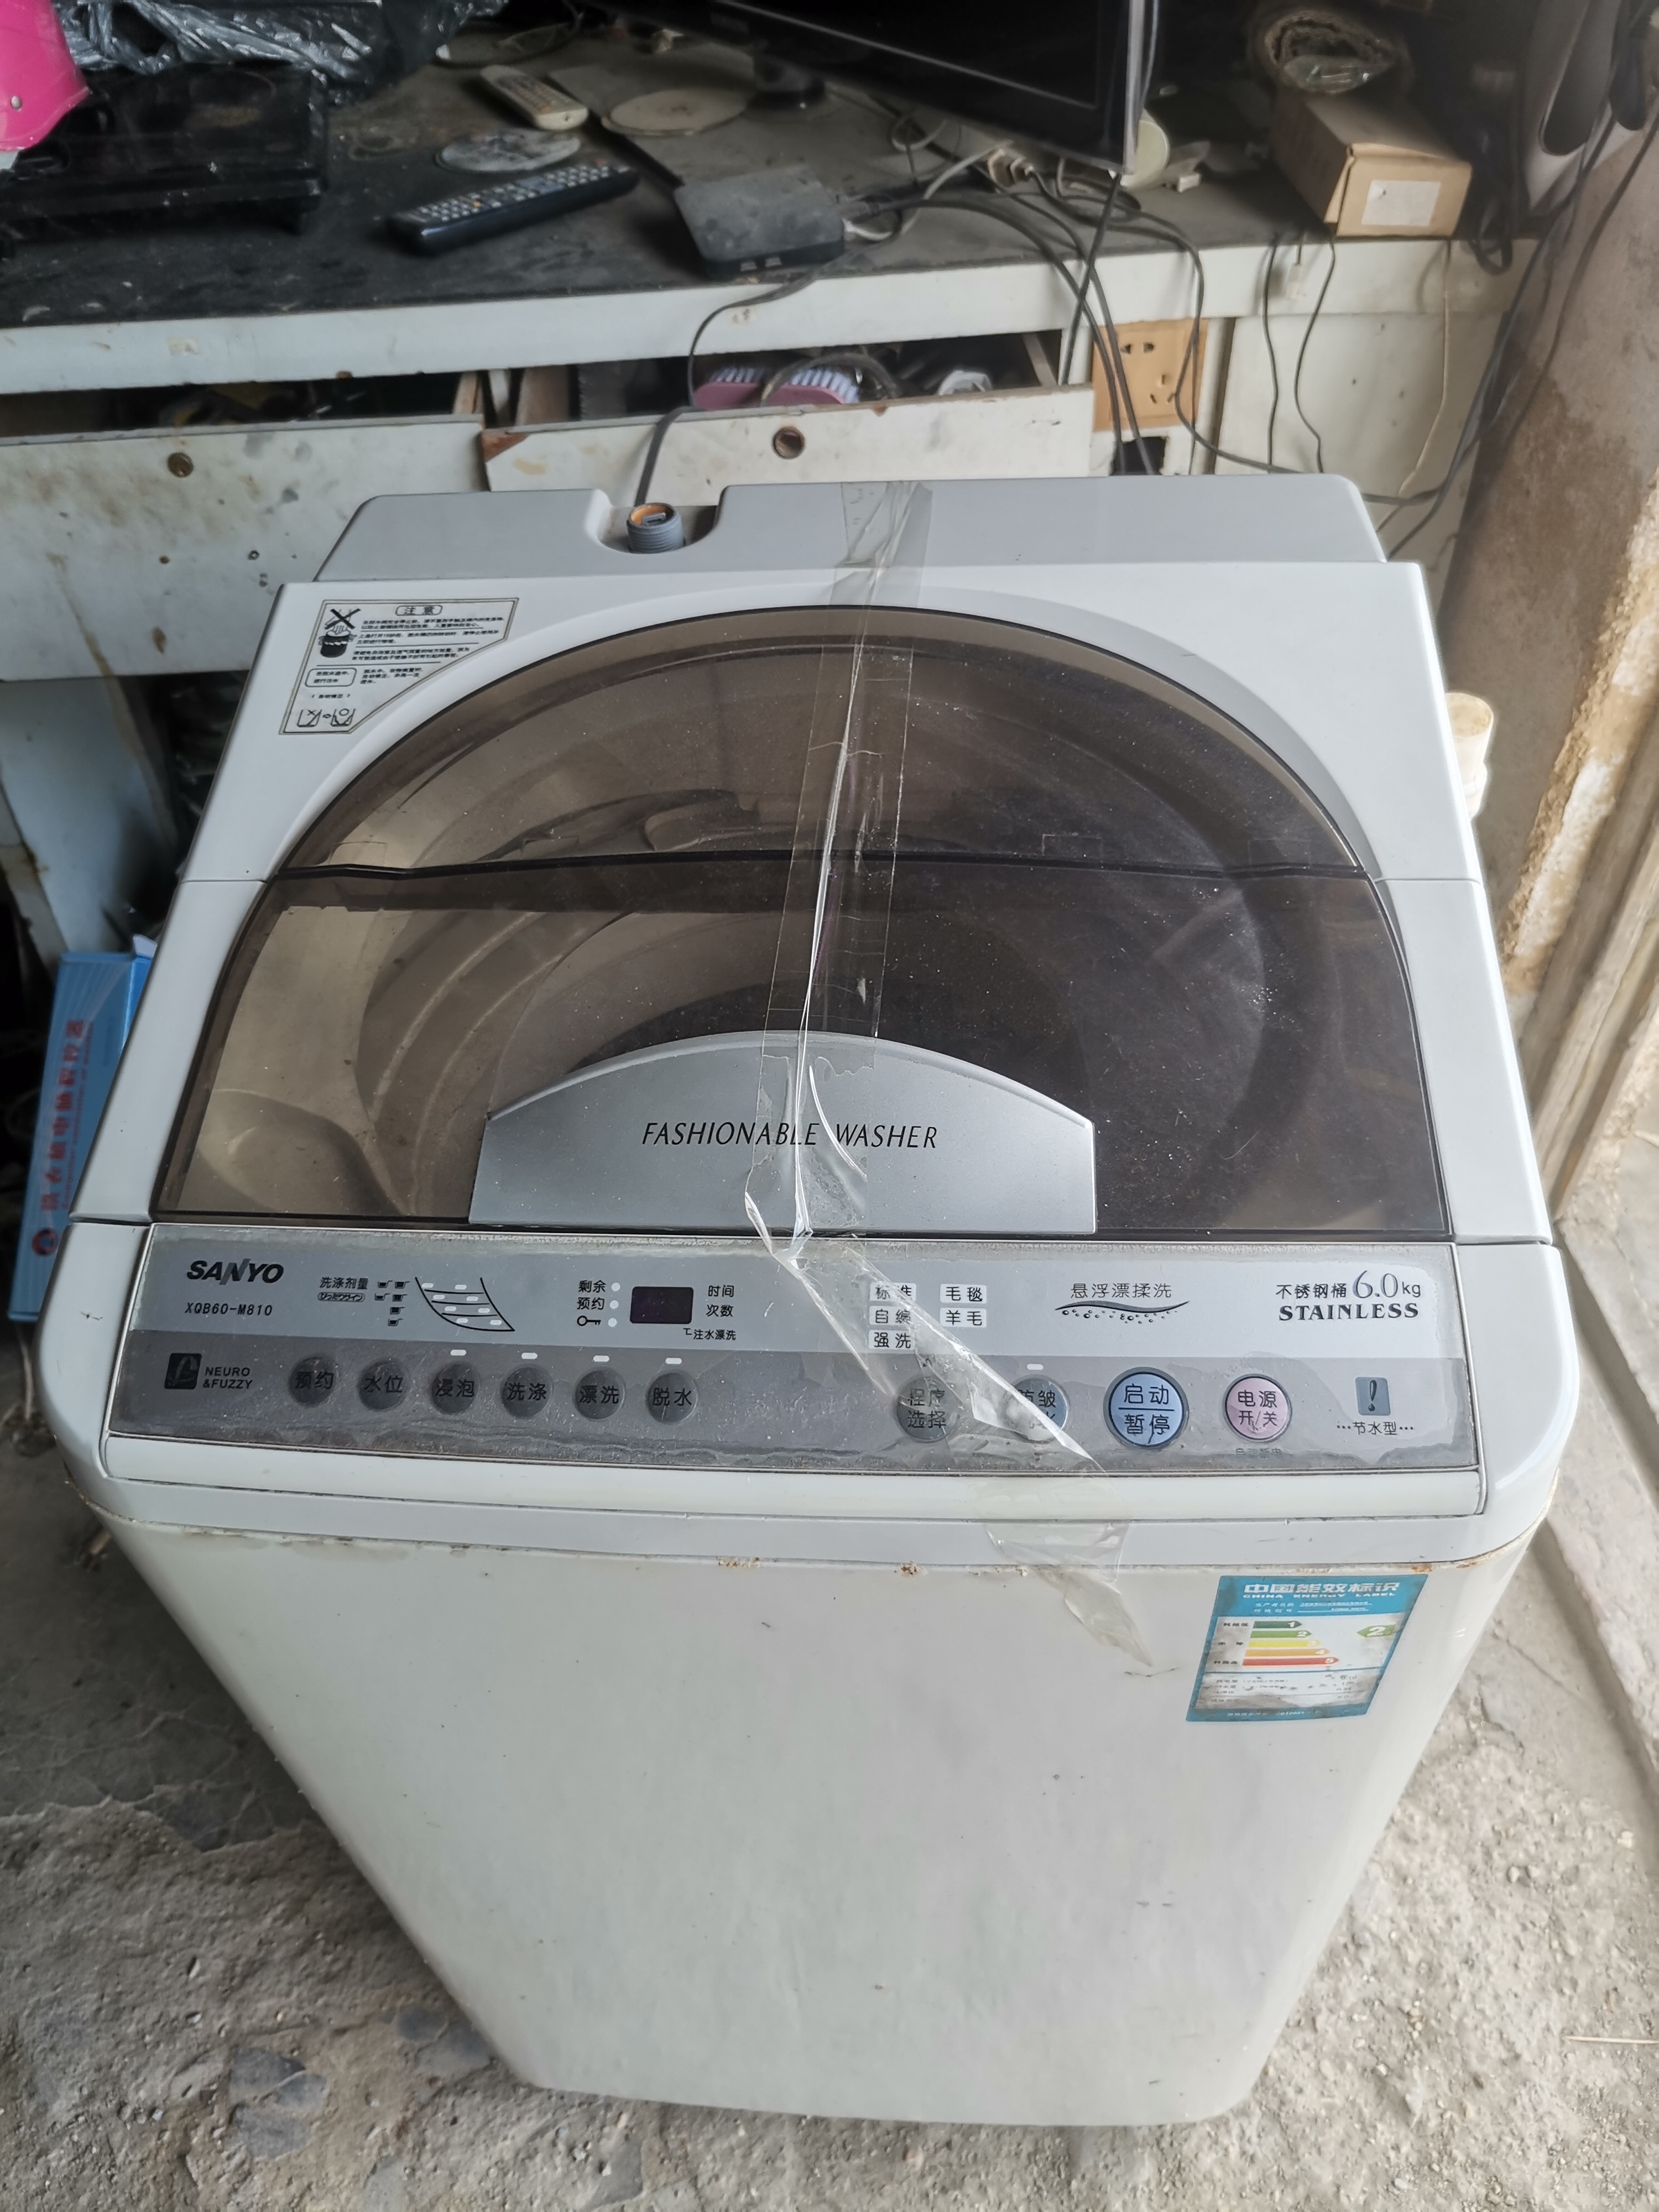 旧洗衣机图片高清图片